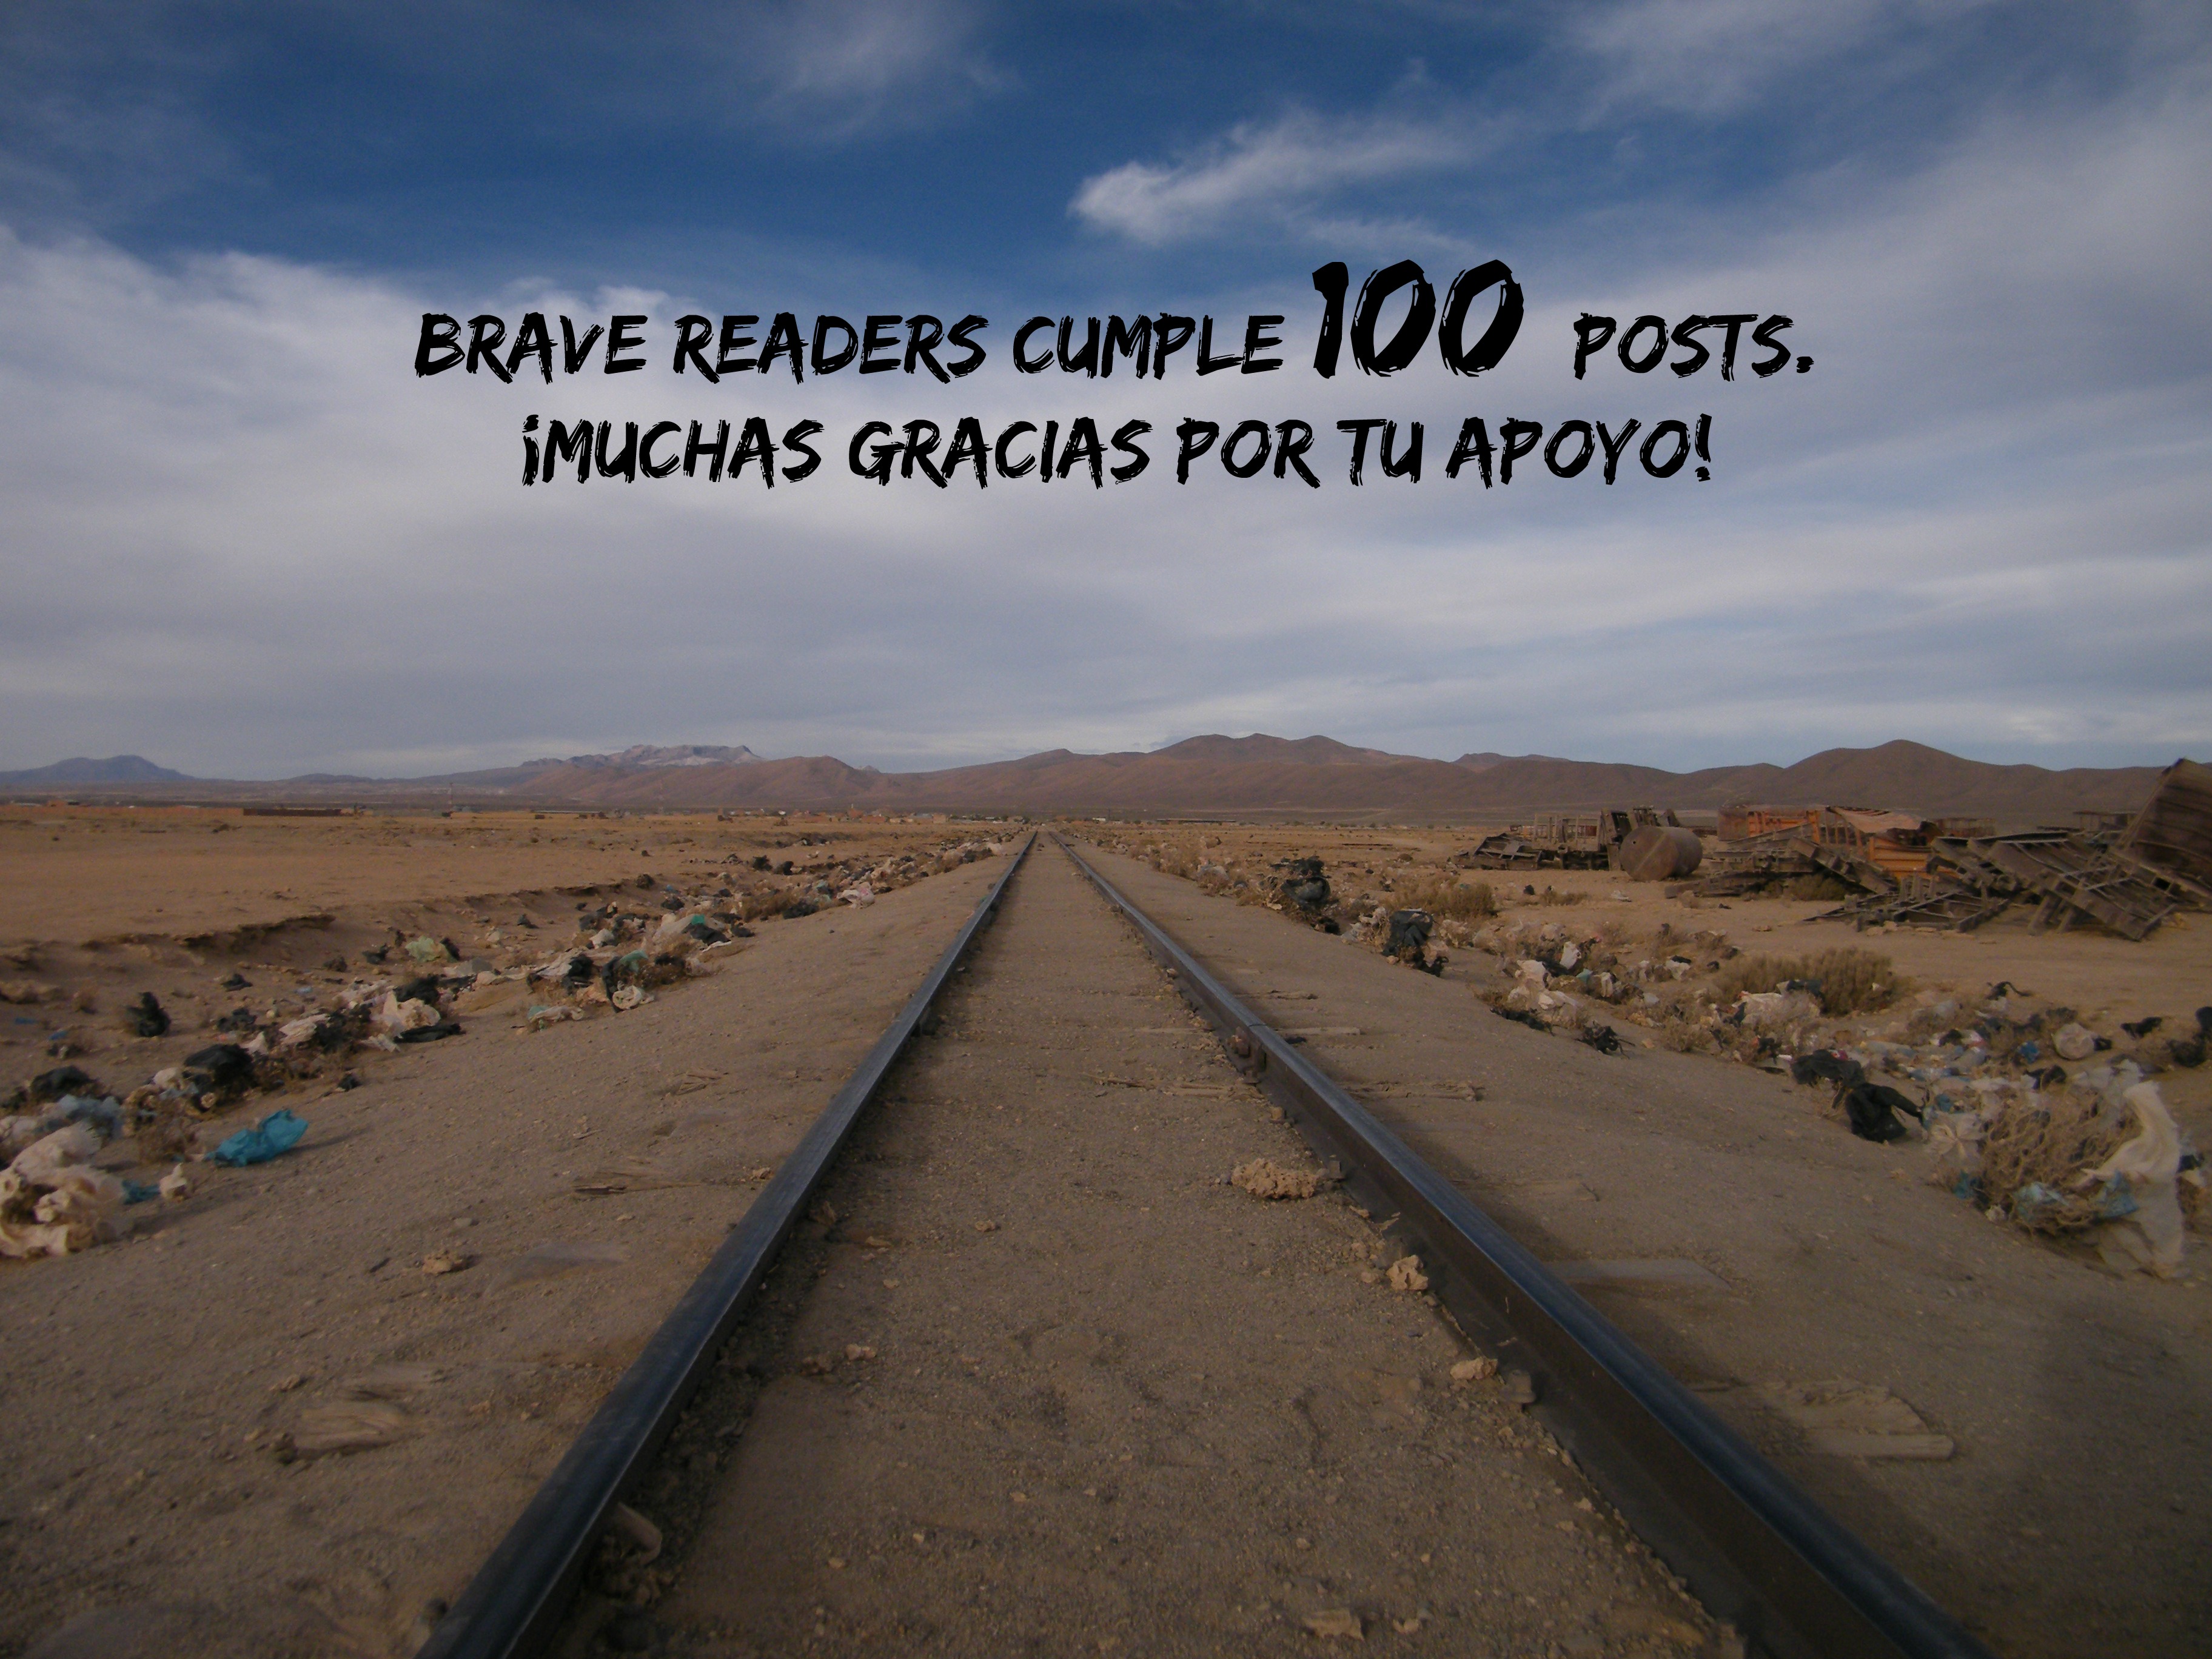 100 posts de Brave Readers